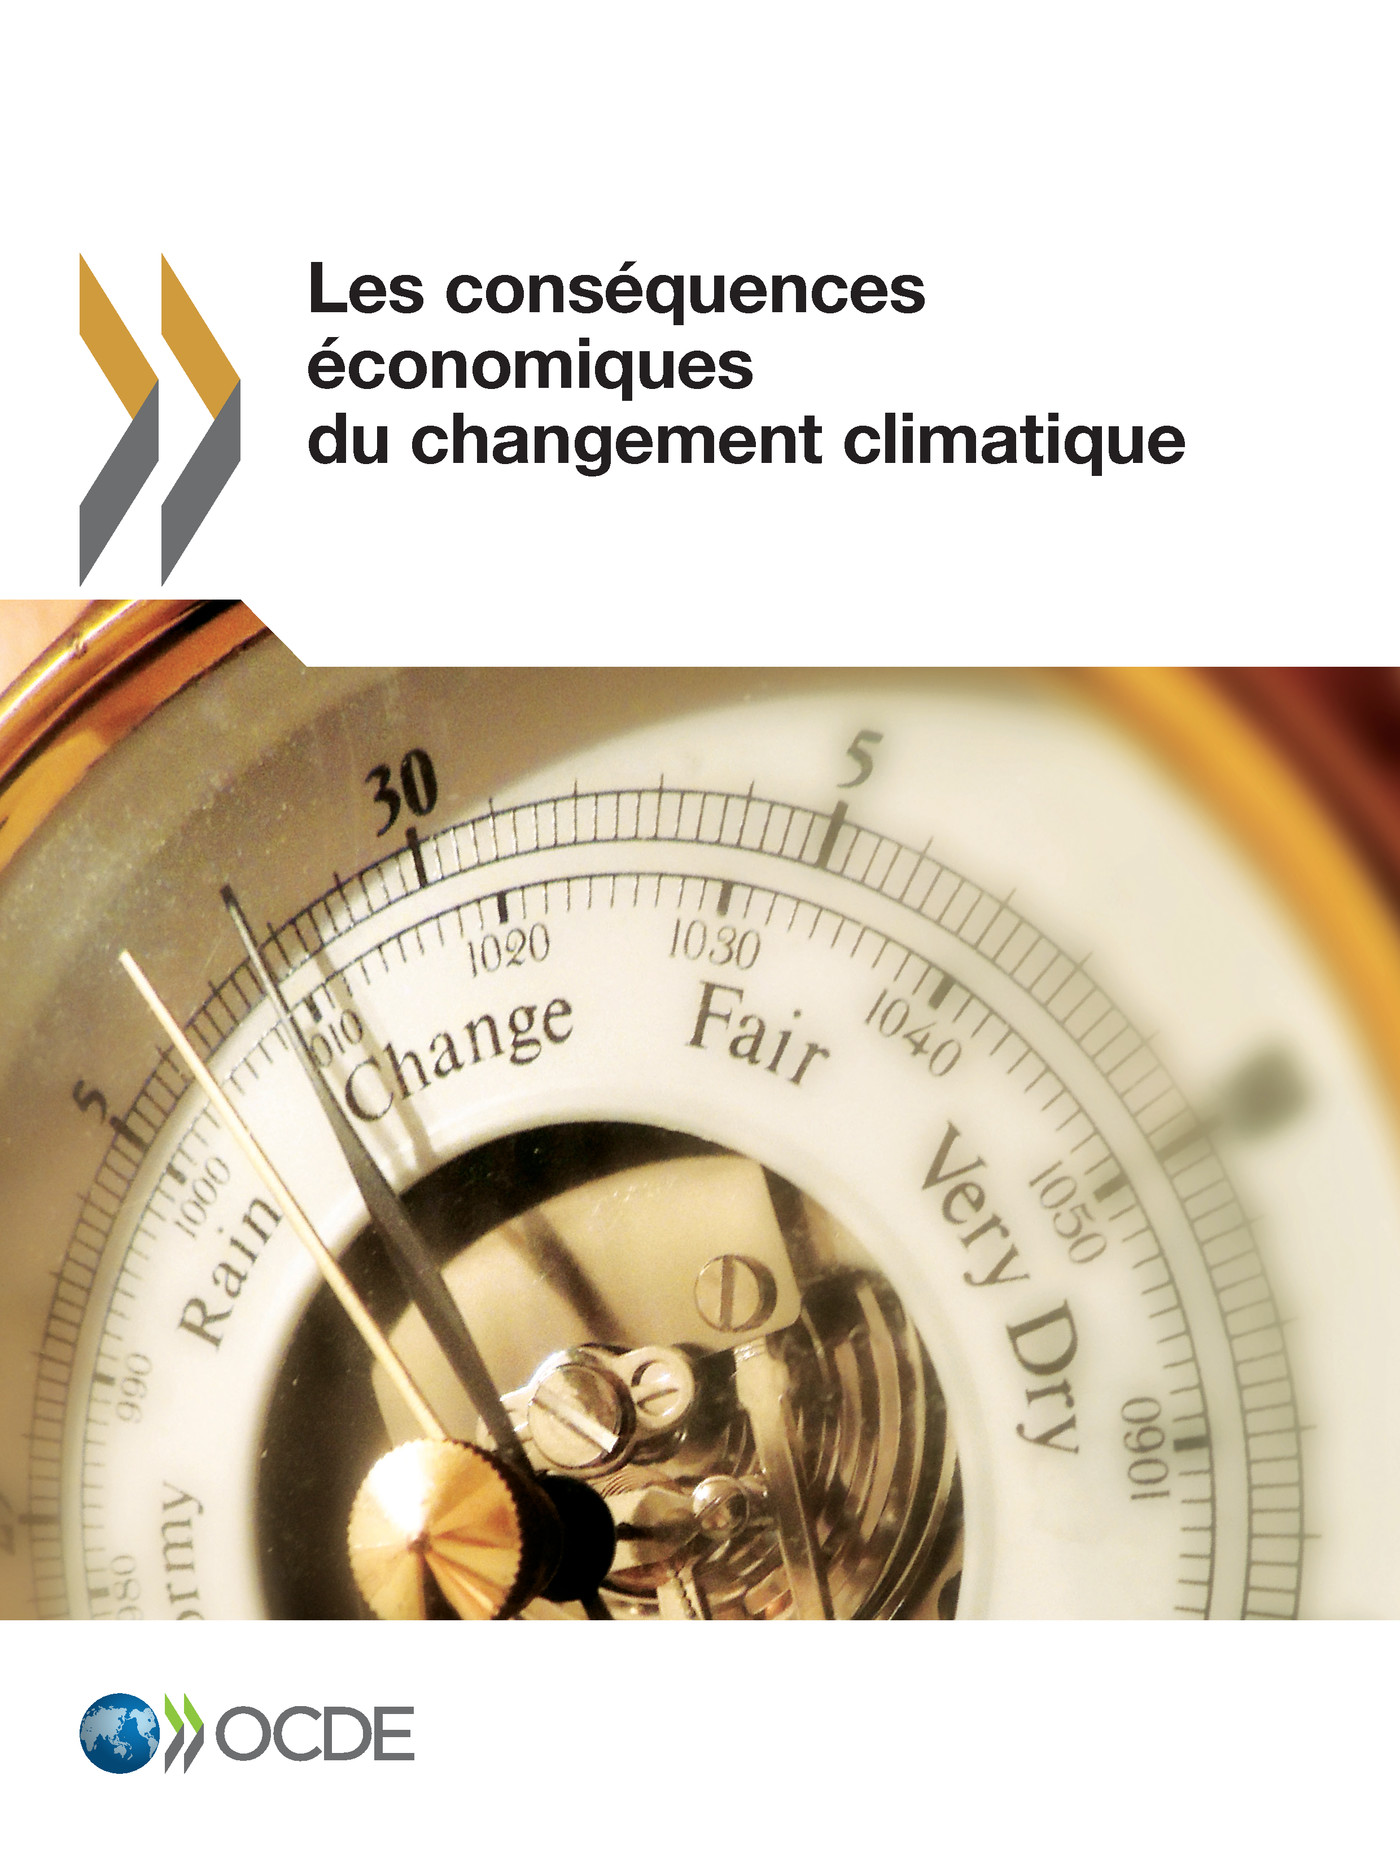 Les conséquences économiques du changement climatique -  Collectif - OCDE / OECD